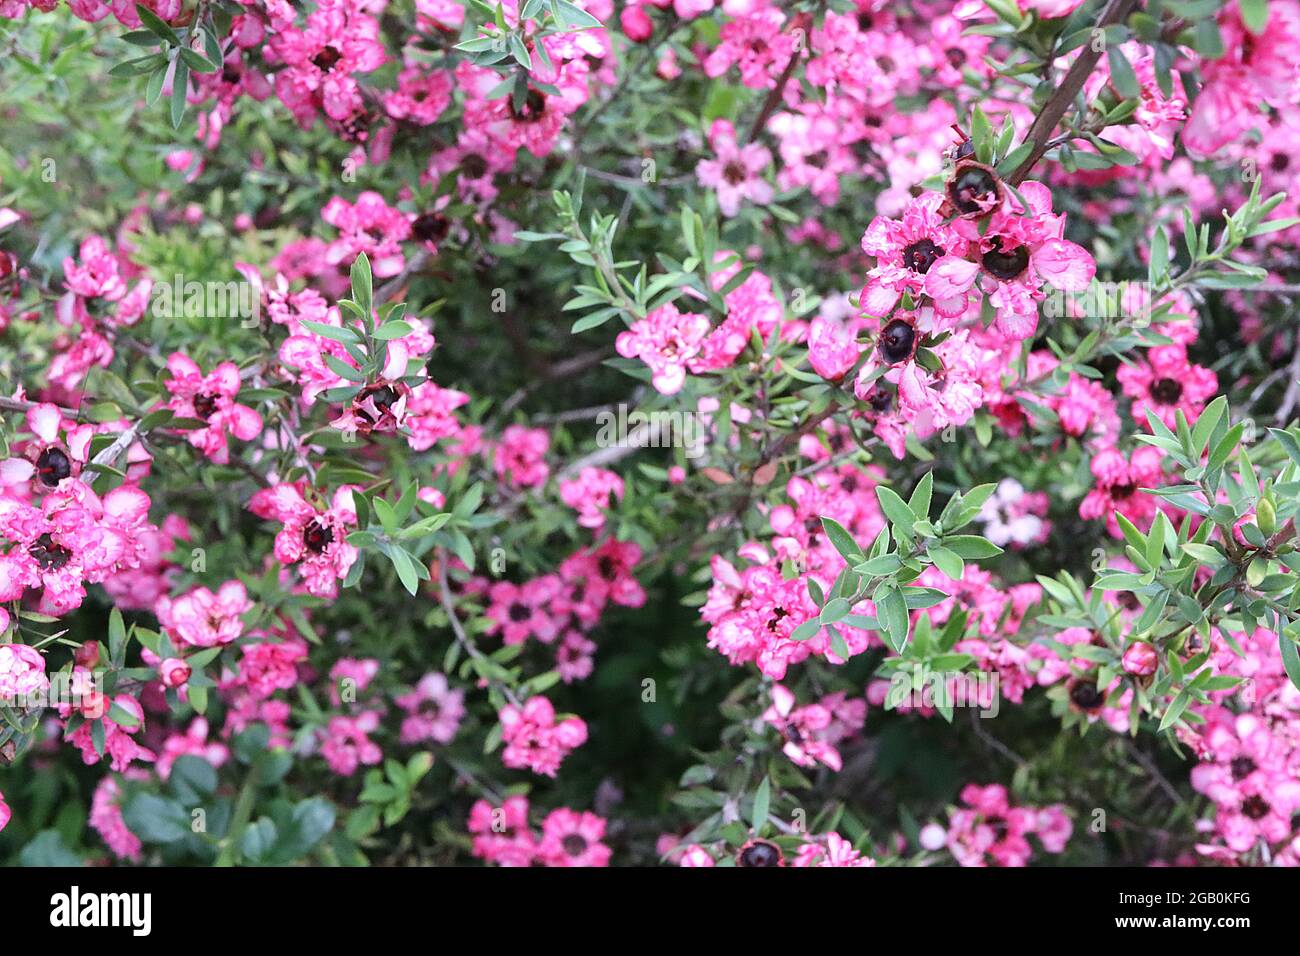 Leptospermum Scoparium ‘Coral Candy’ Manuka Myrtle Coral Candy – kleine doppelte rosa und weiße Blüten und kleine graugrüne Blätter, Juni, England, Großbritannien Stockfoto